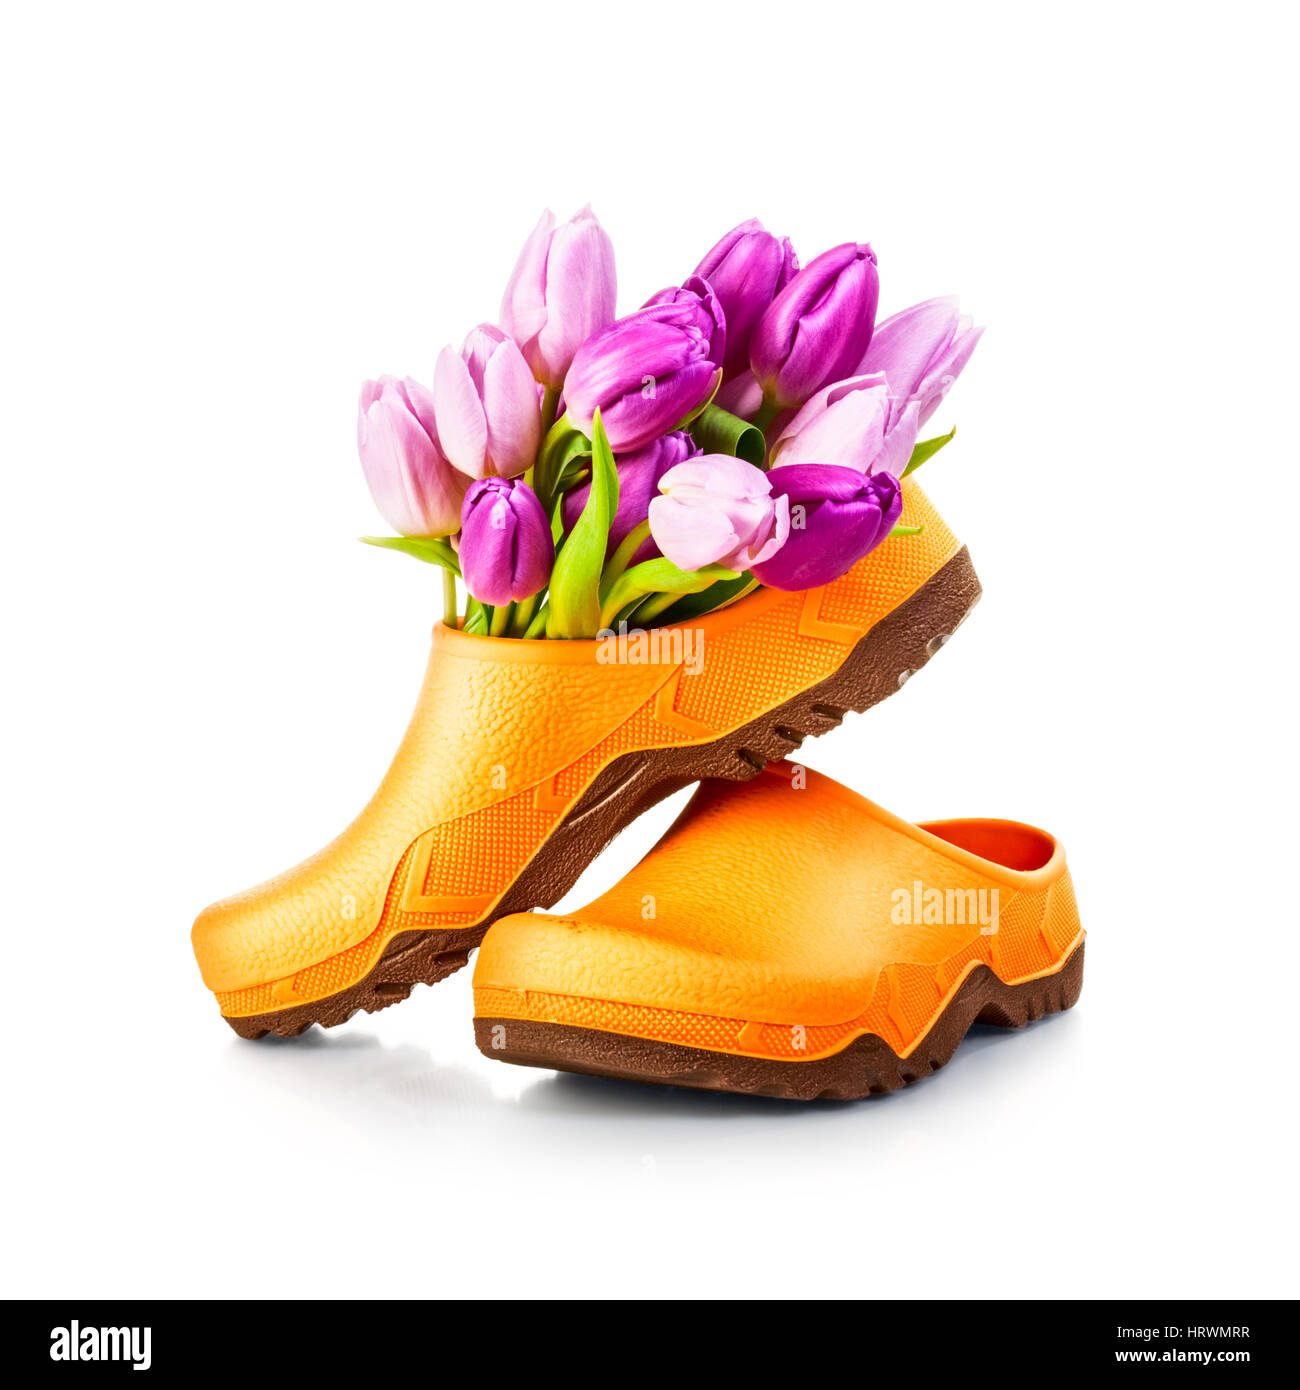 Primavera tulip flores y jardín zapatos zueco aislado sobre fondo blanco trazado de recorte incluido Foto de stock